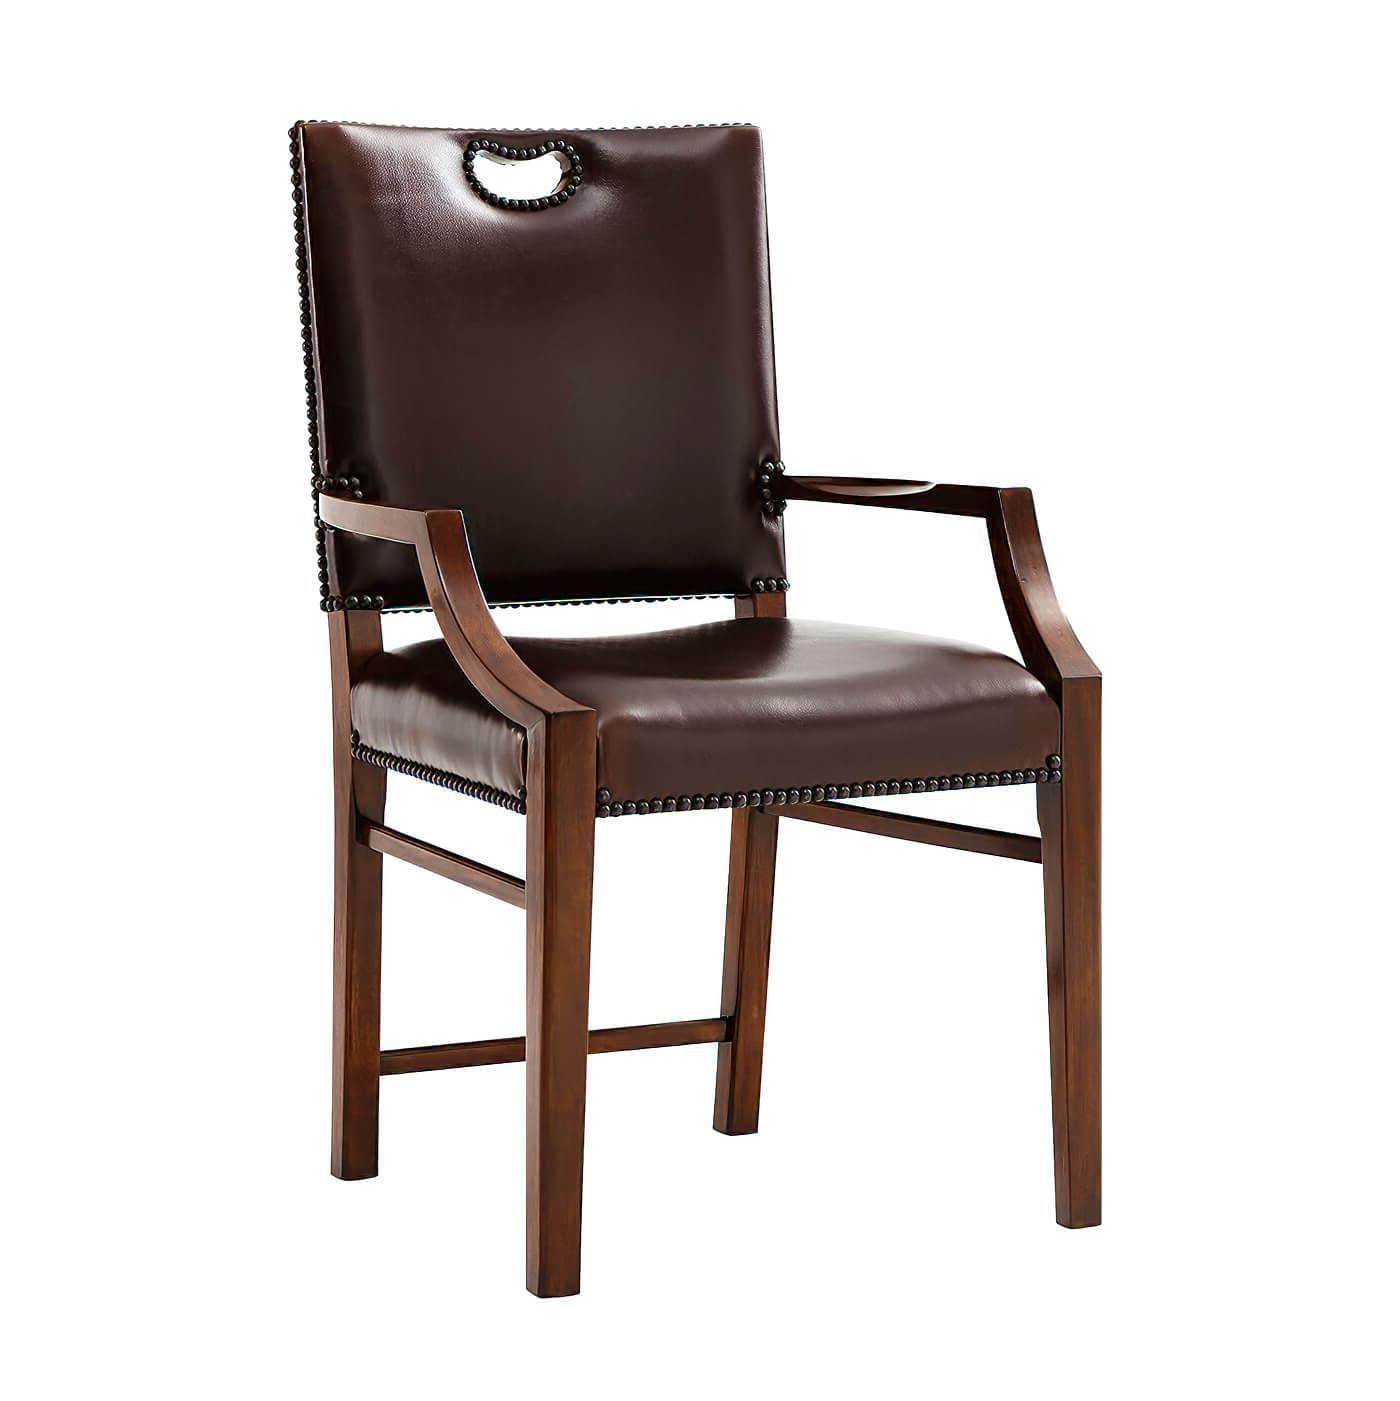 Sessel im Campaign-Stil, gepolsterte rechteckige Rückenlehne mit durchbrochenem Tragegriff über einem gepolsterten Sitz auf quadratischen, spitz zulaufenden Beinen, die durch Strecker verbunden sind. Inspiriert von einem englischen Original aus dem